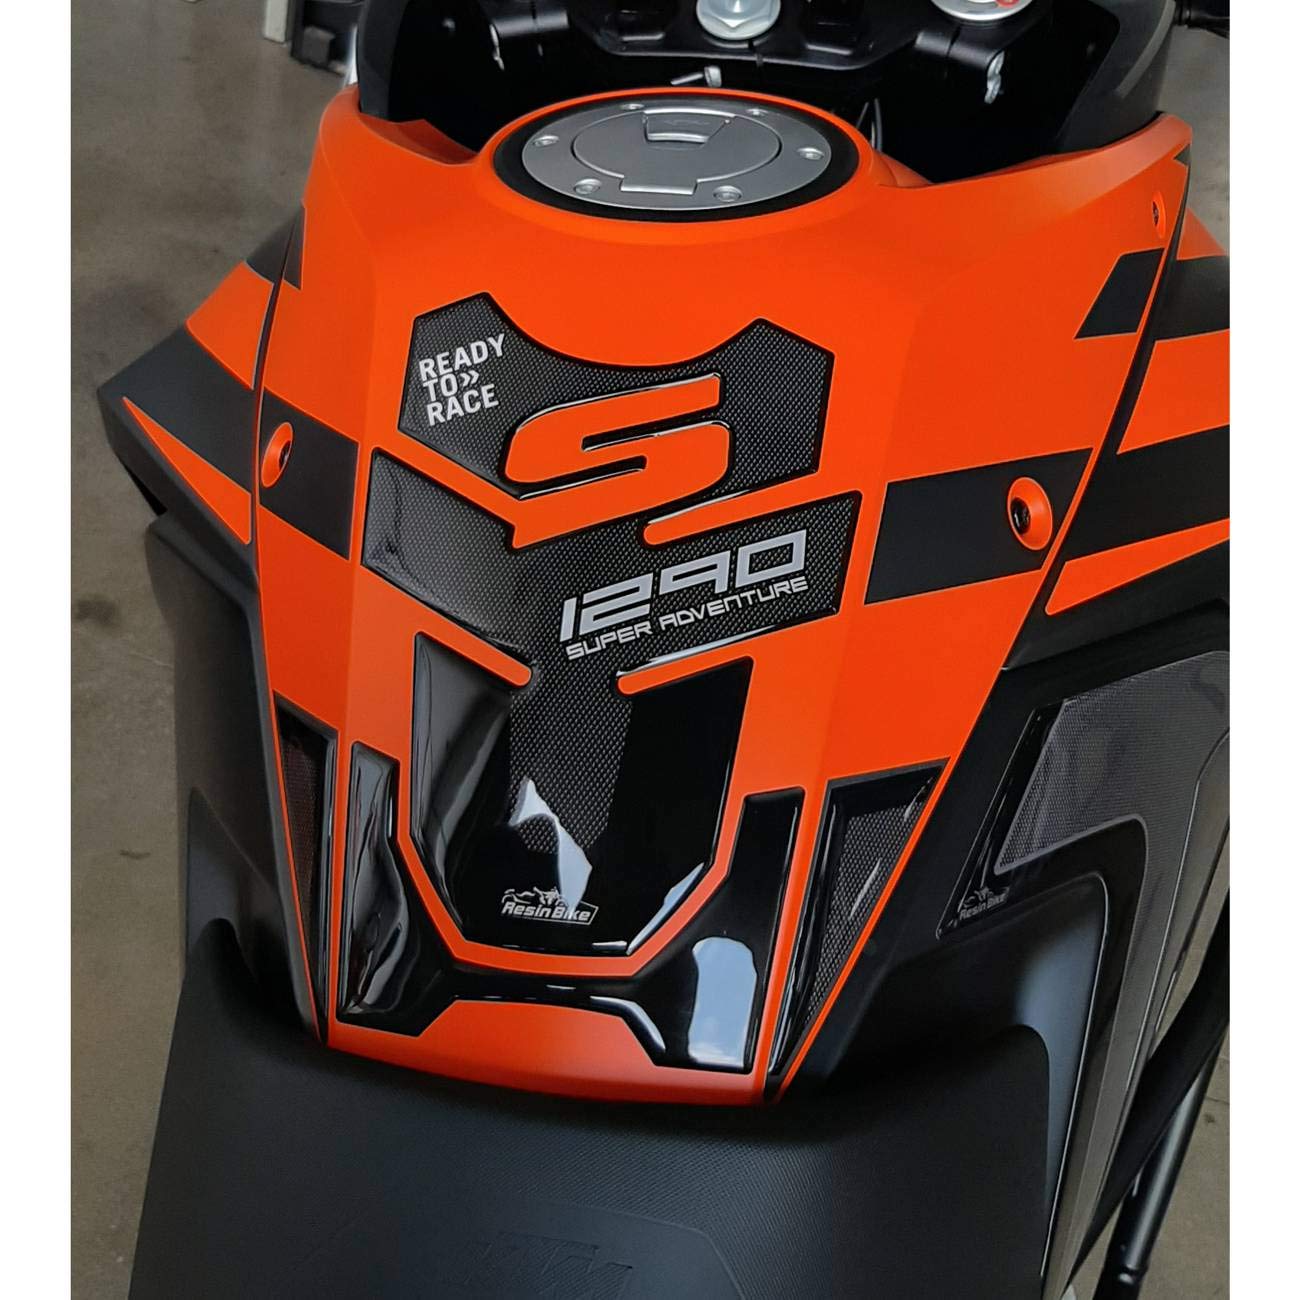 Resin Bike Aufkleber für Motorrad Kompatibel mit KTM 1290 Super Adventure S 2017 2020. Tankabdeckung vor Stößen und Kratzern. 3D-Harzklebstoff – Stickers - Made in Italy von Resin Bike